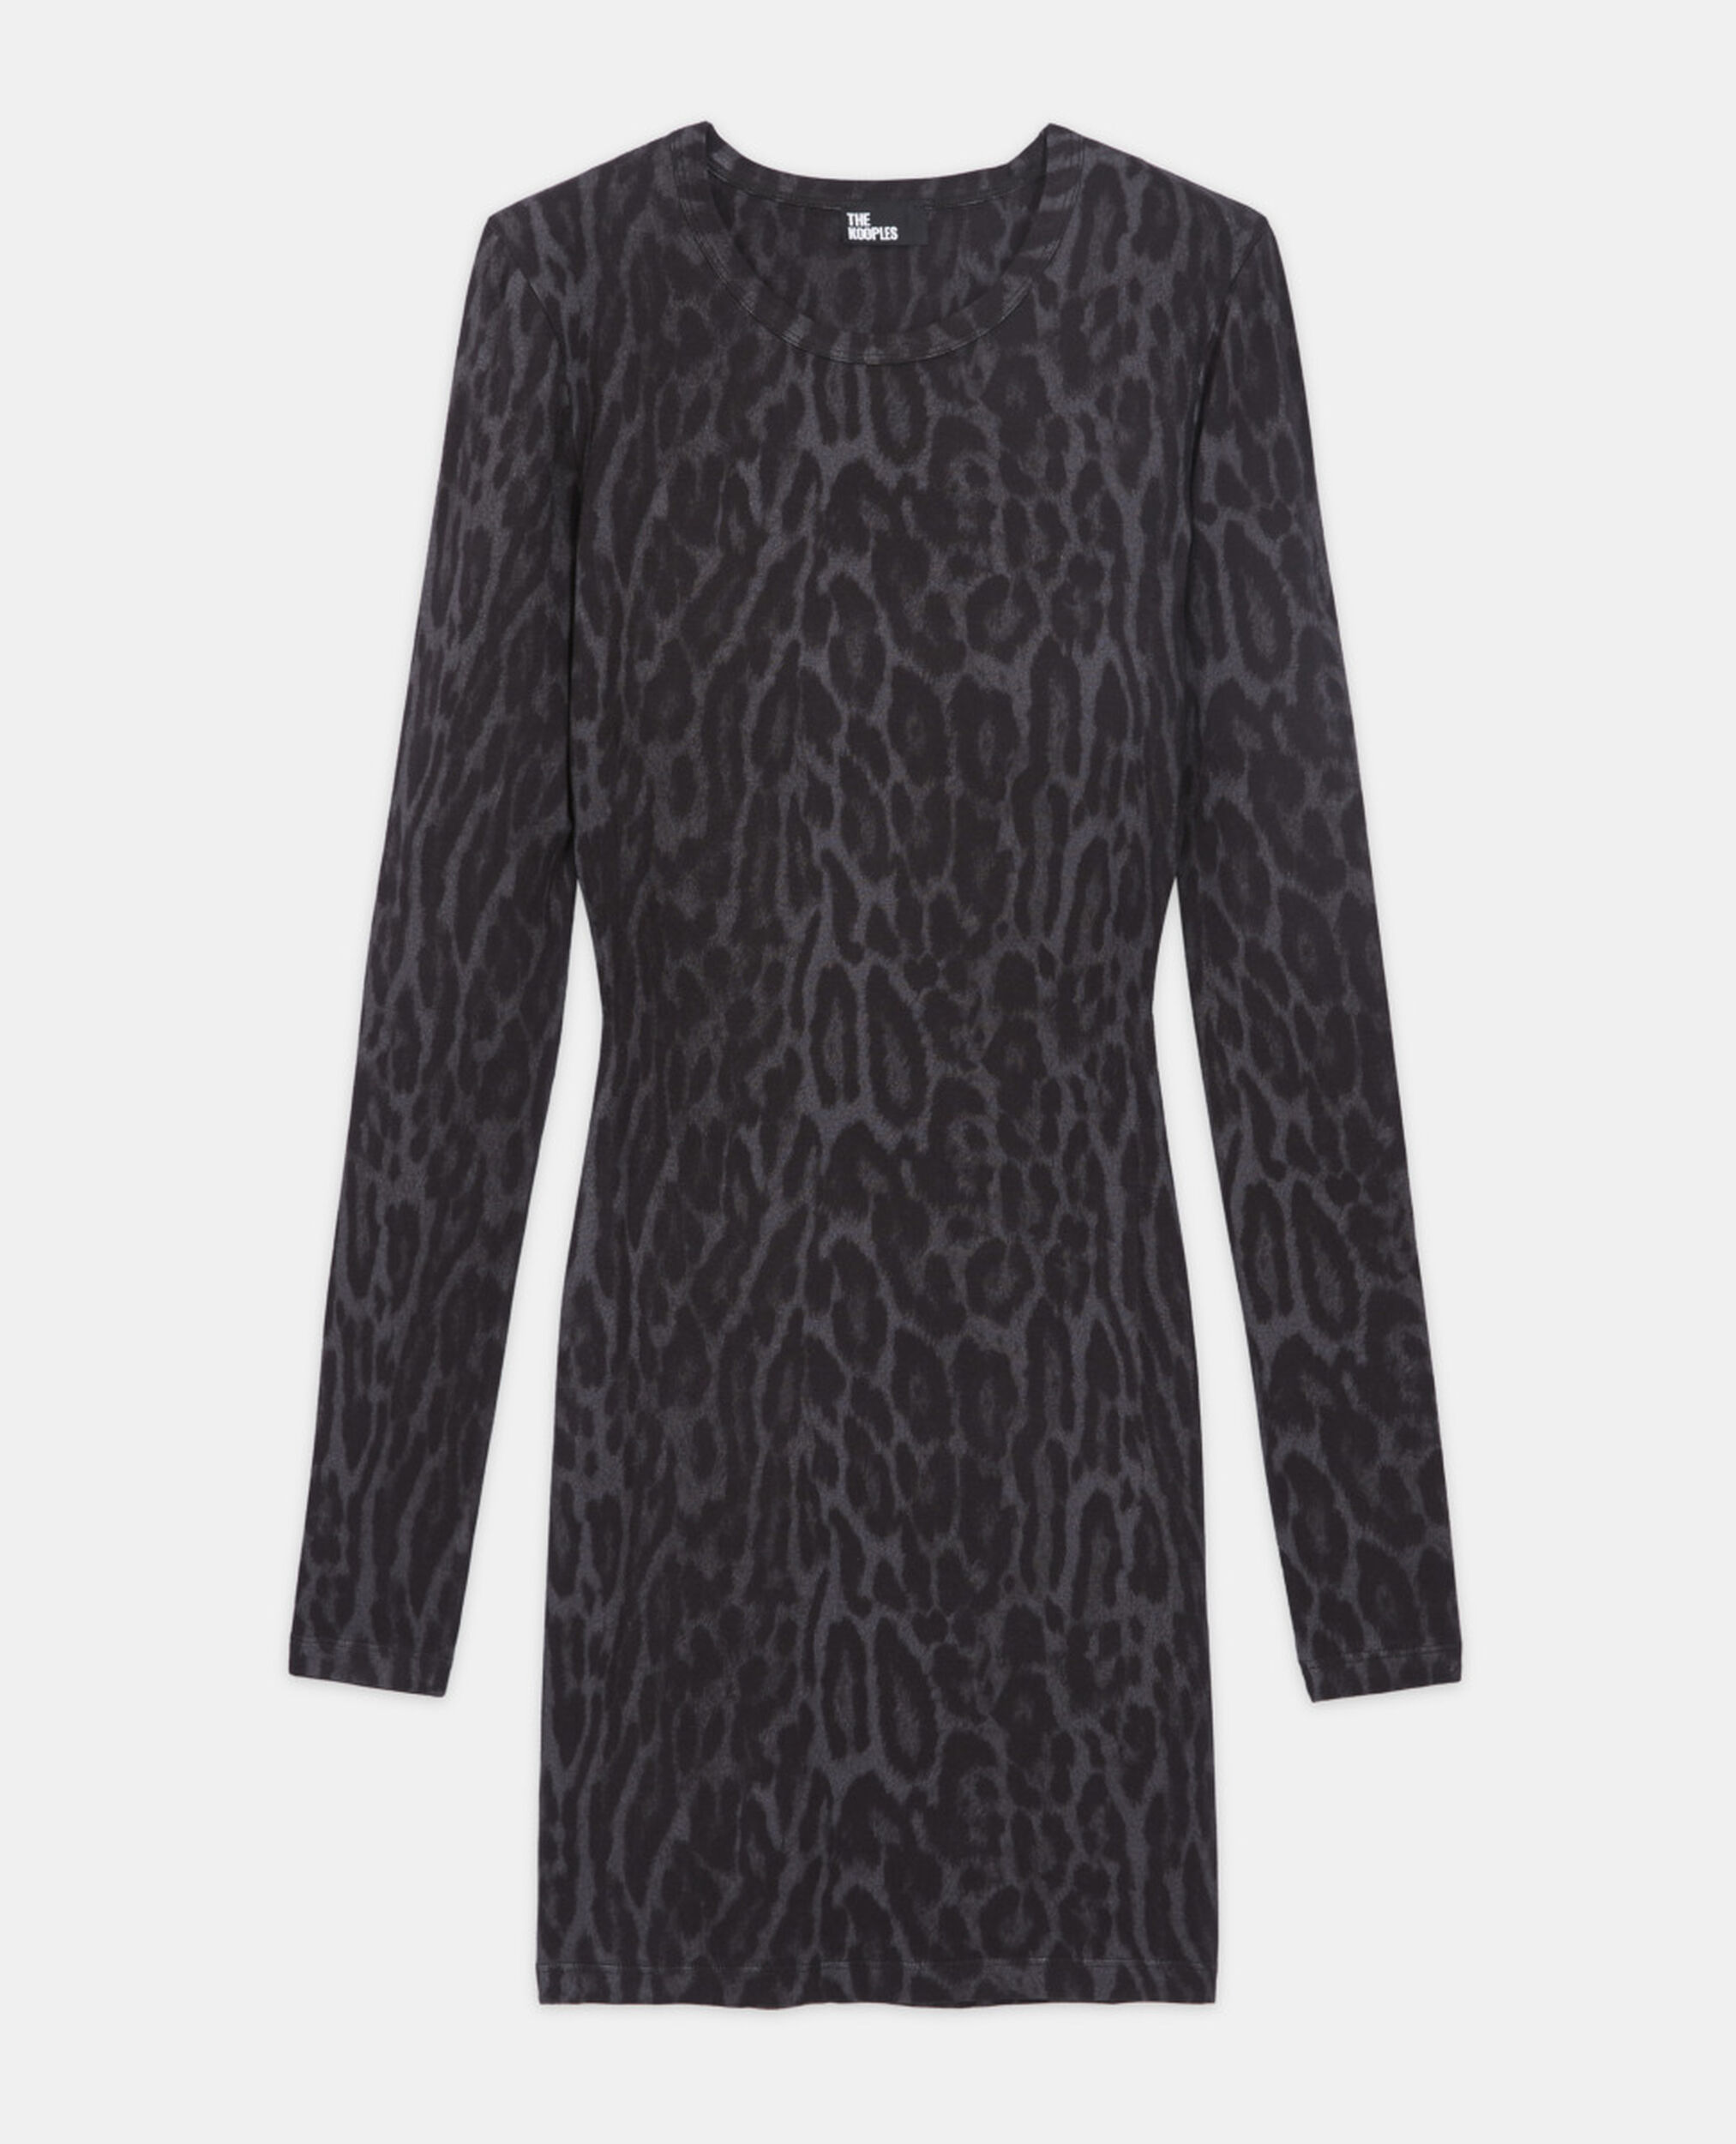 Robe courte léopard, BLACK, hi-res image number null